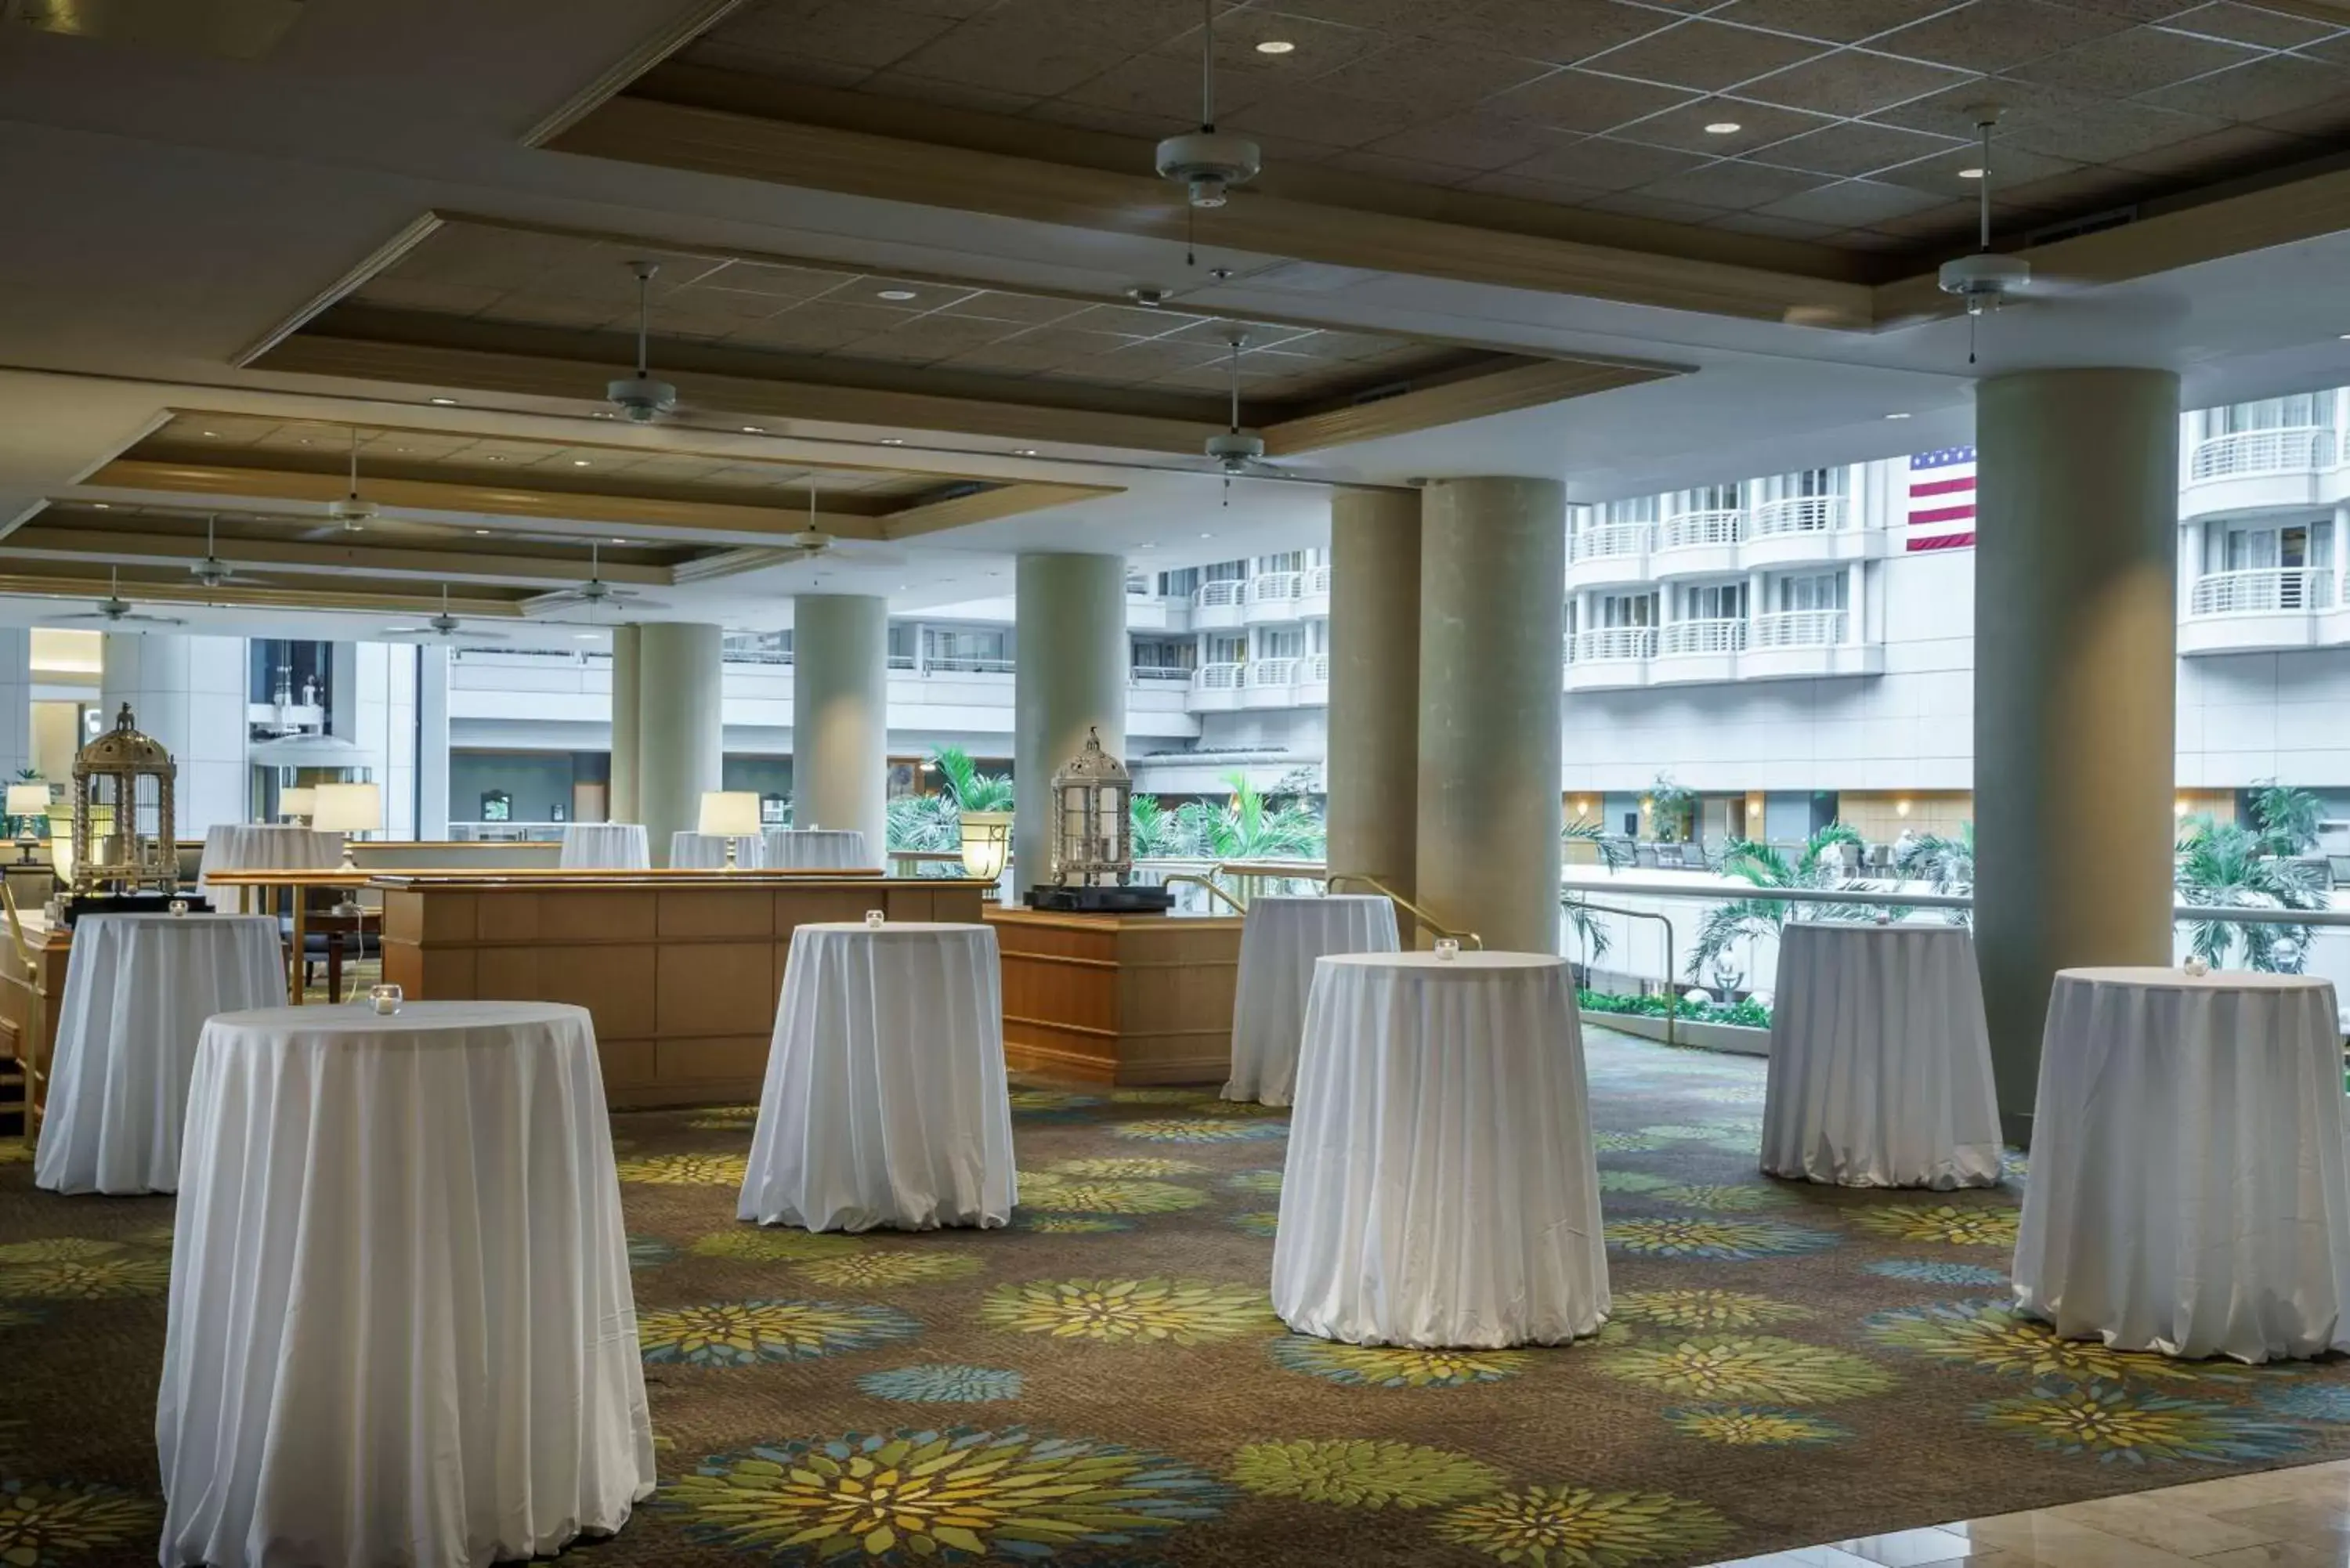 Lobby or reception, Banquet Facilities in Hyatt Regency Orlando International Airport Hotel